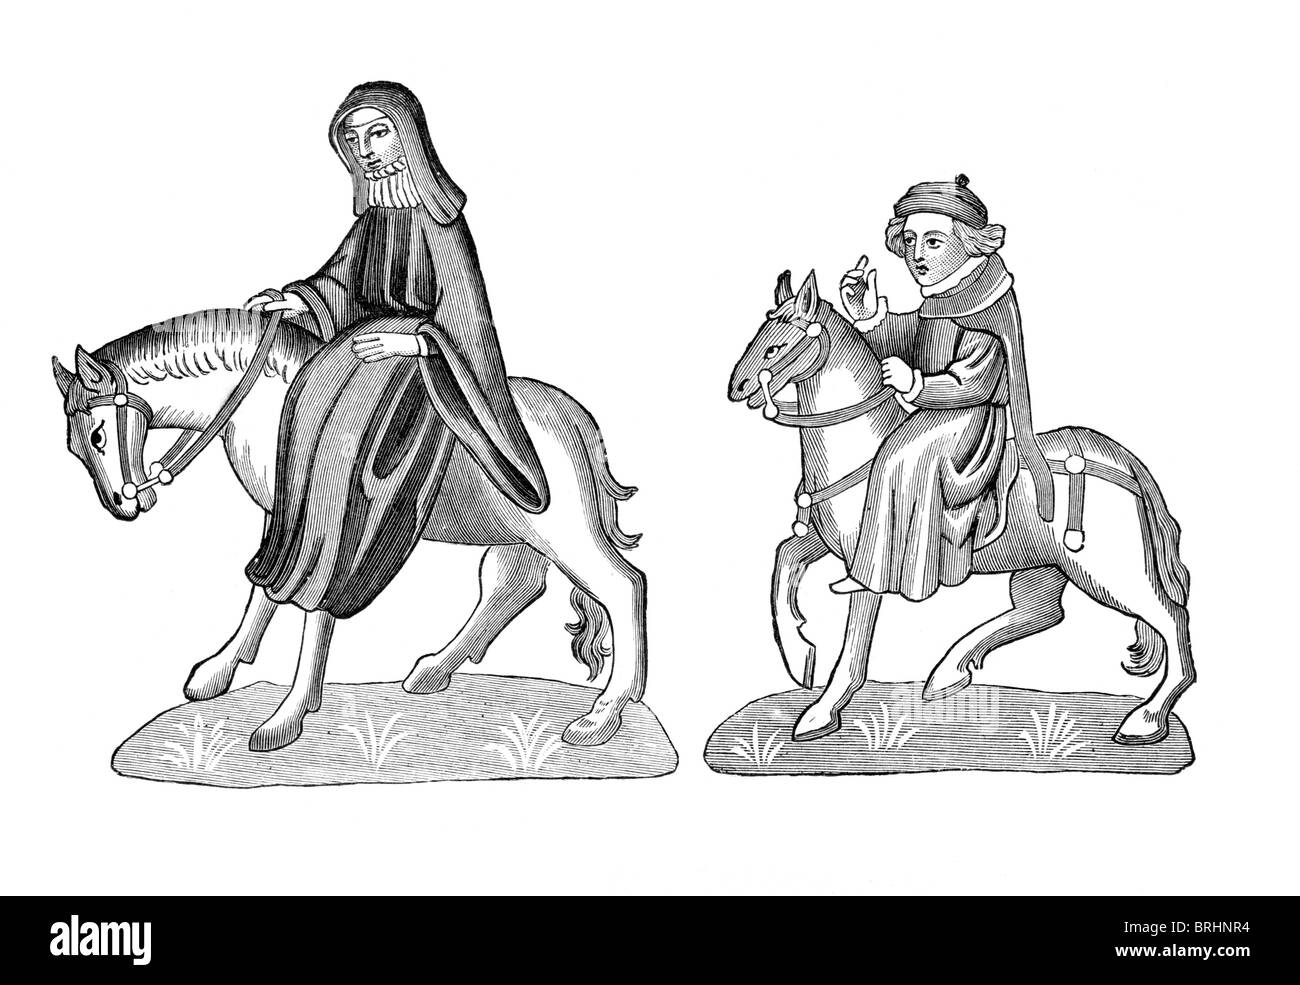 Illustration noir et blanc ; la deuxième nonne et le prêtre de religieuse, de l'autographe d'Ellesmere, les Contes de Canterbury Banque D'Images